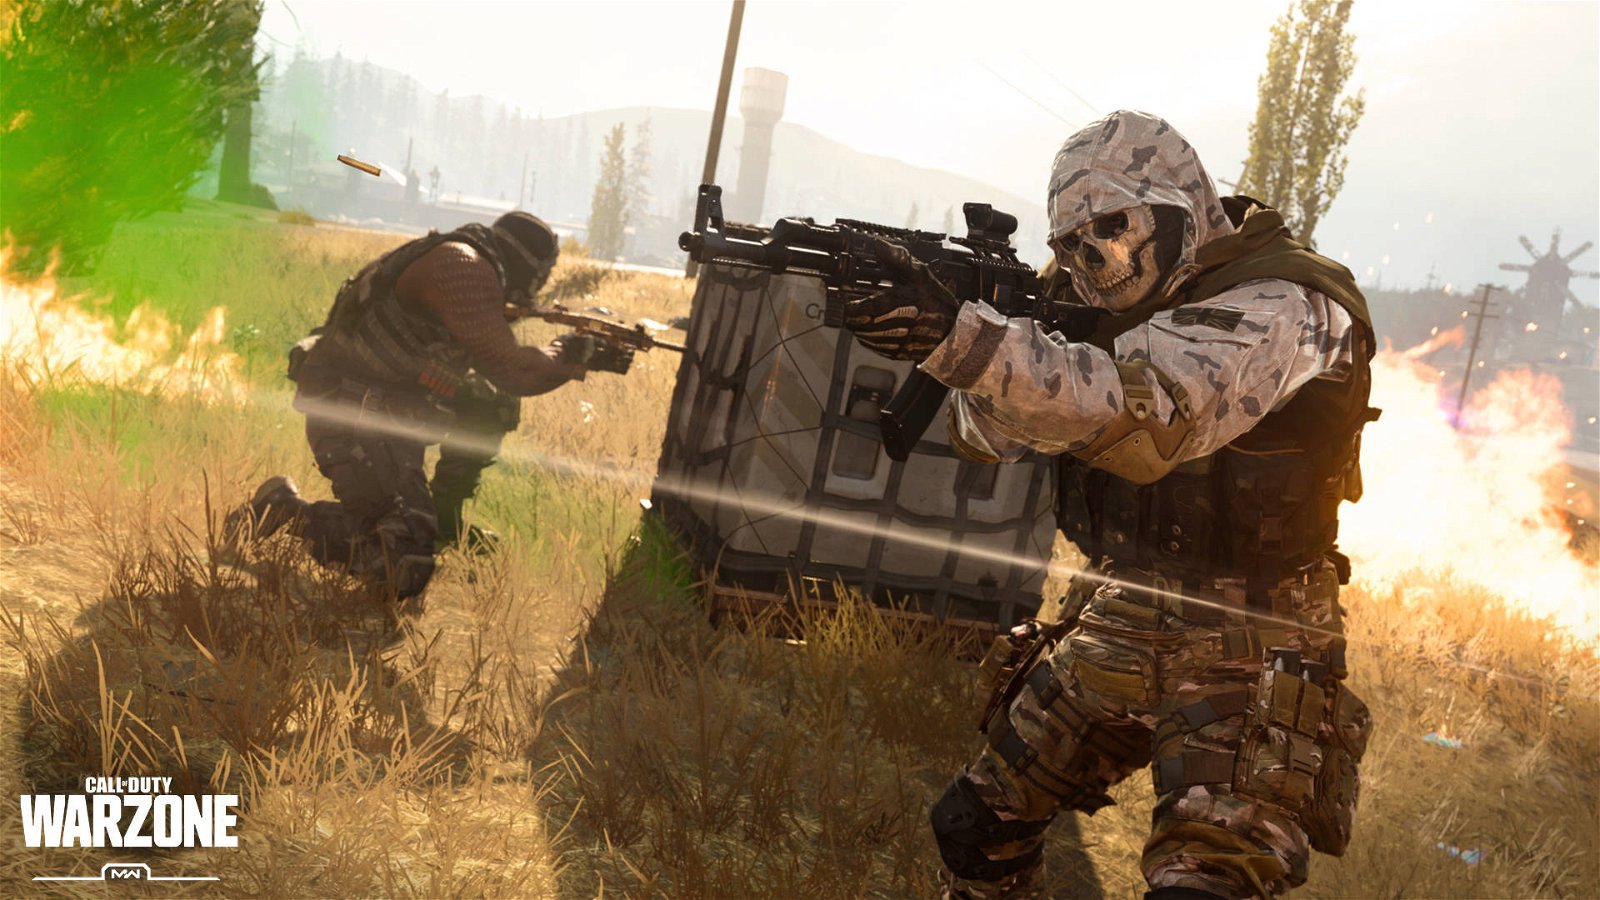 Immagine di Call of Duty Warzone: la nuova arma è pura distruzione, il video